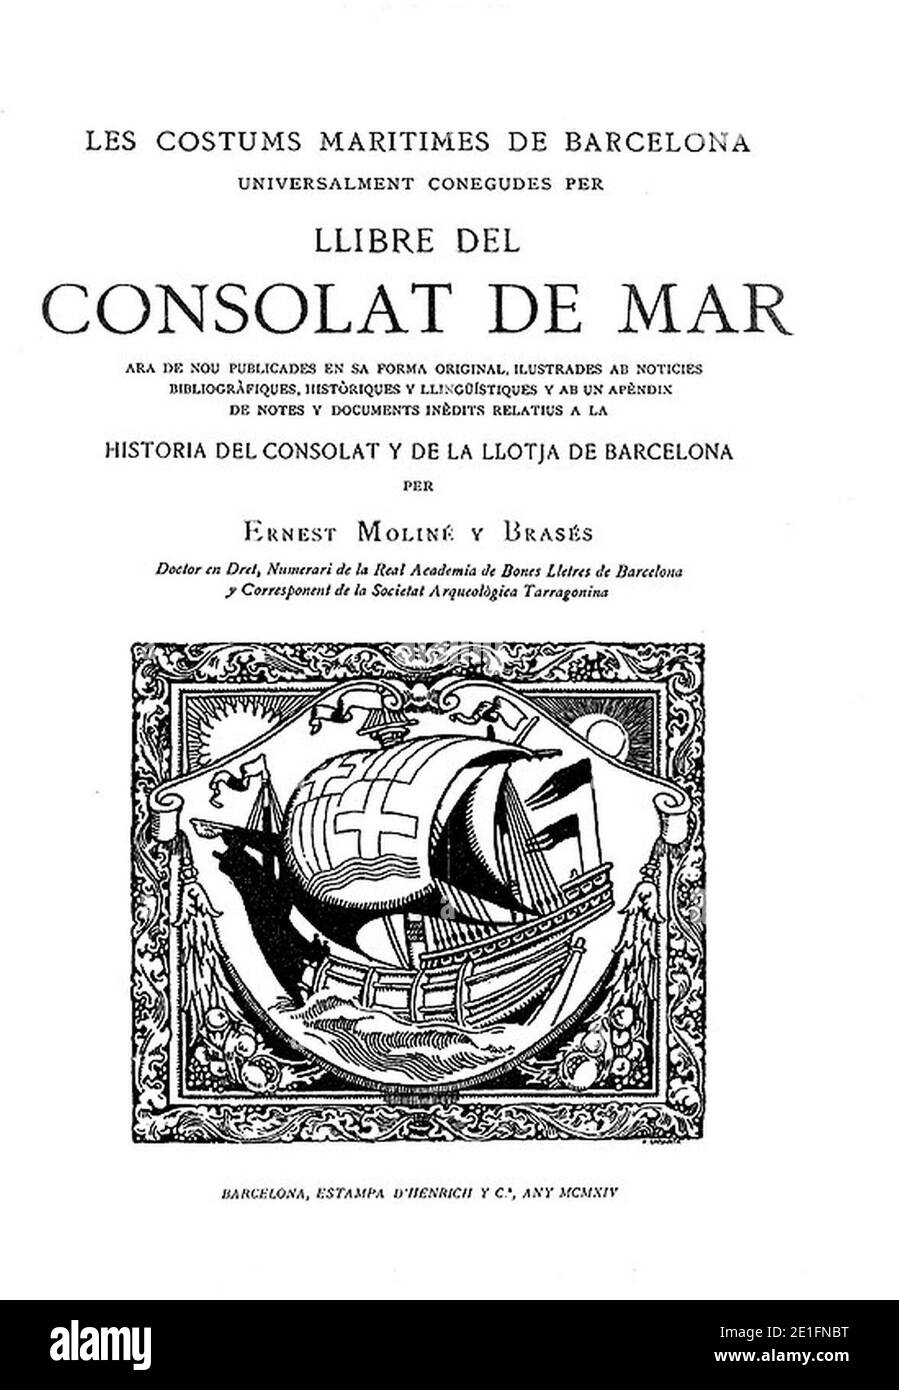 Llibre del Consolat de Mar 1814. Stock Photo